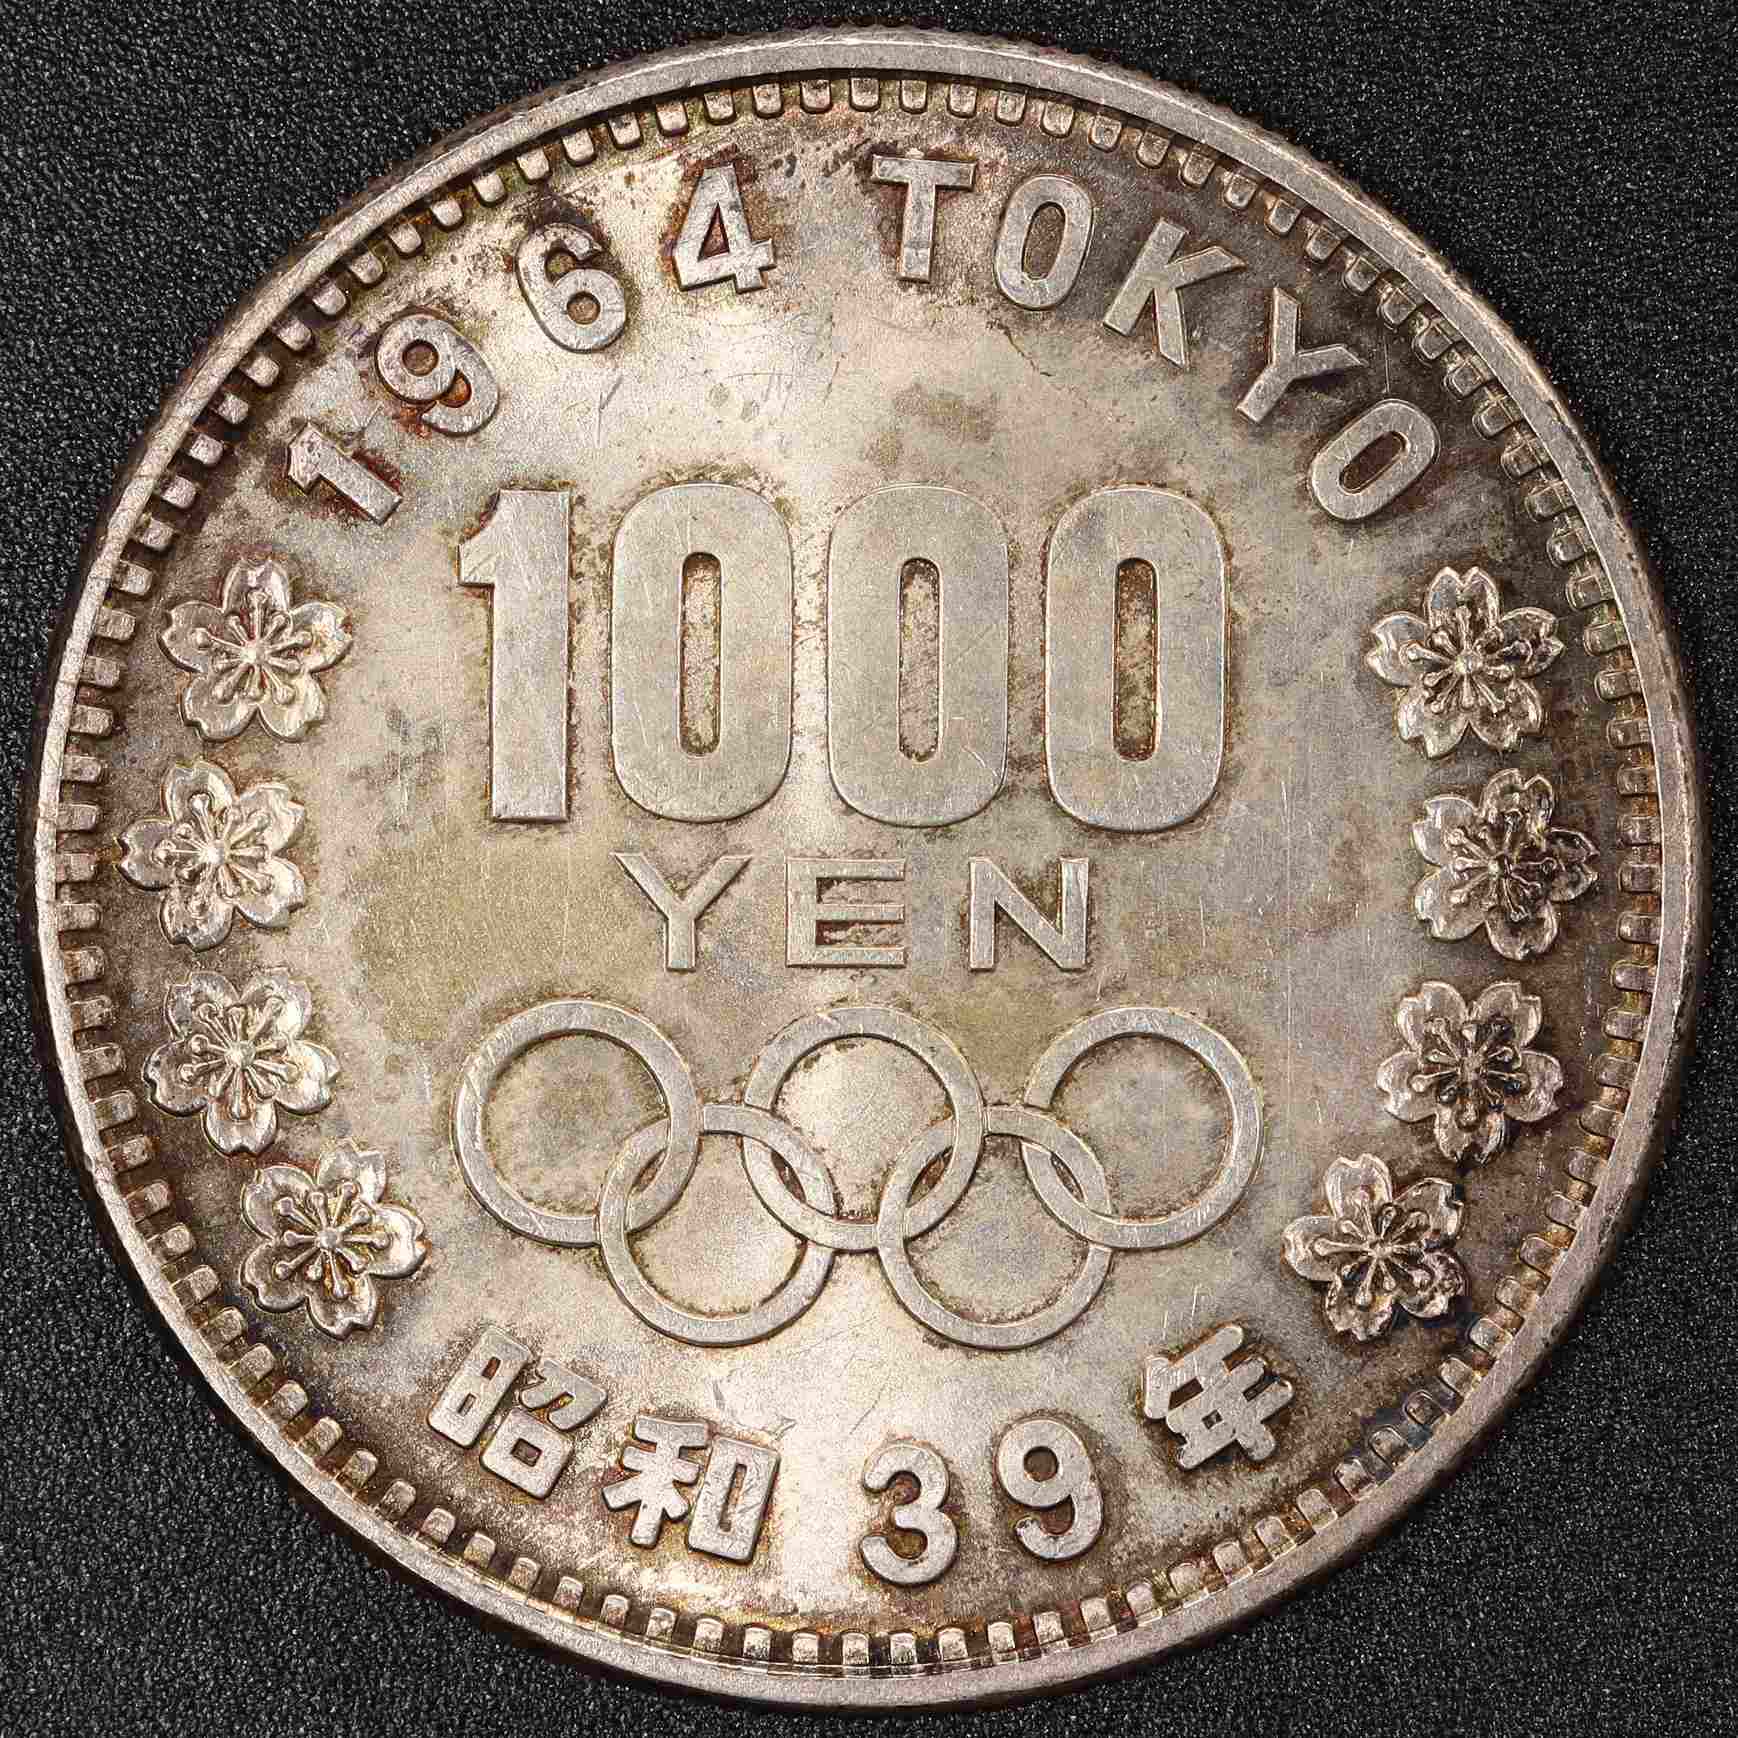 1964年 東京オリンピック記念1000円銀貨 20枚セット | ミスターコインズ